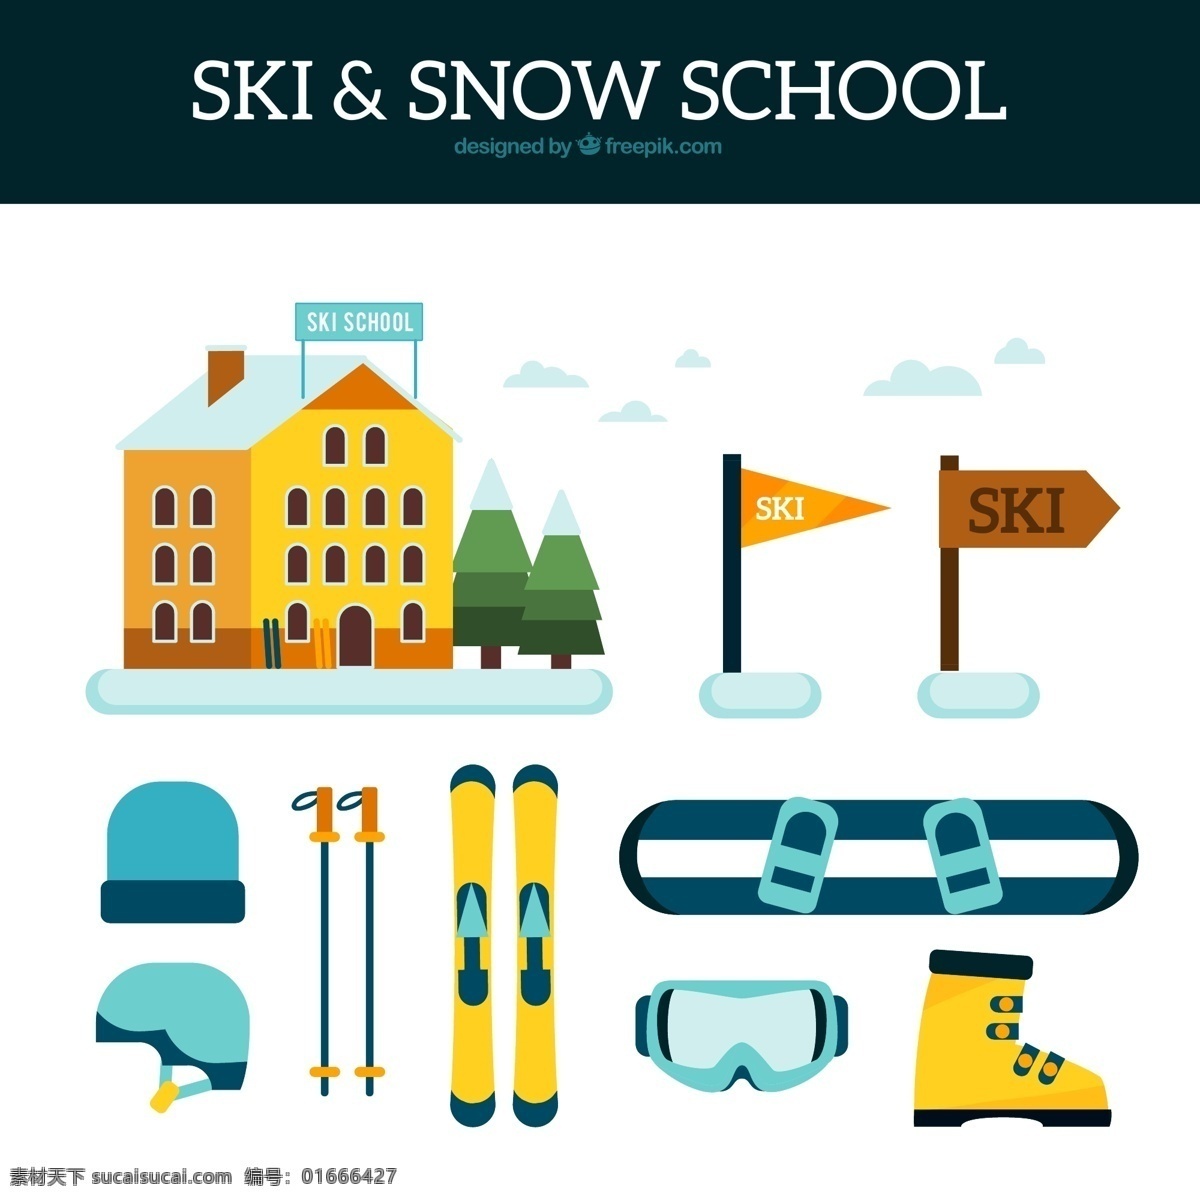 款 扁平化 滑雪 装备 元素 楼房 滑雪学校 树木 旗子 滑雪头盔 滑雪杖 滑雪板 滑雪镜 滑雪鞋 标志图标 其他图标